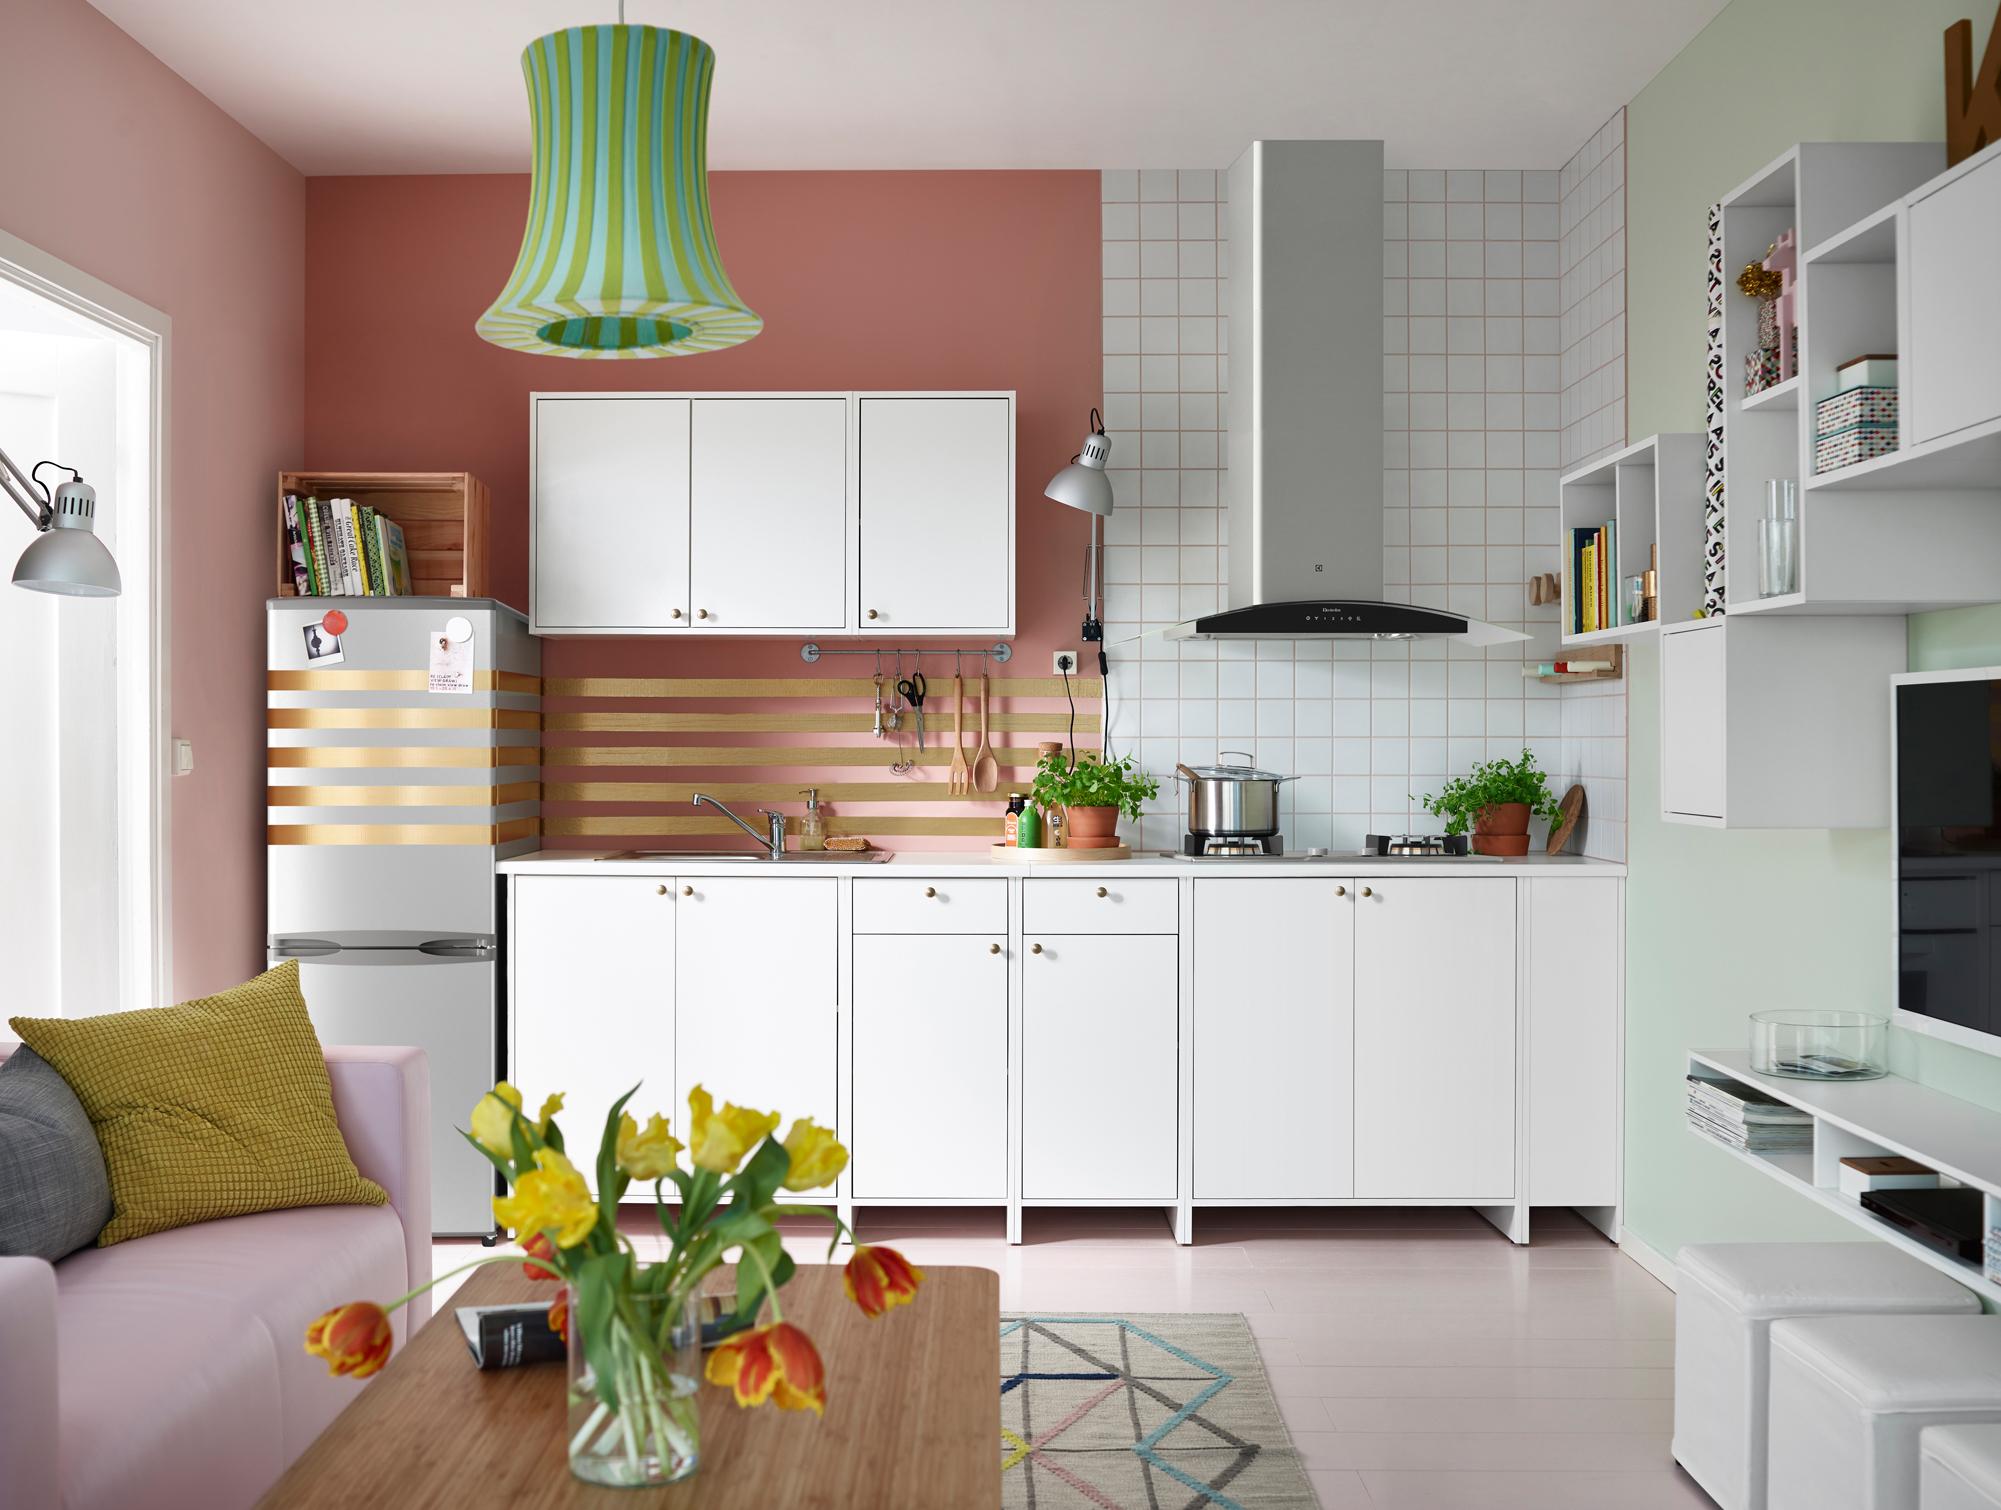 Goldstreifen als Wanddeko #küche #wohnzimmer #ikea #pendelleuchte #rosafarbenessofa #zimmergestaltung ©Inter IKEA Systems B.V.